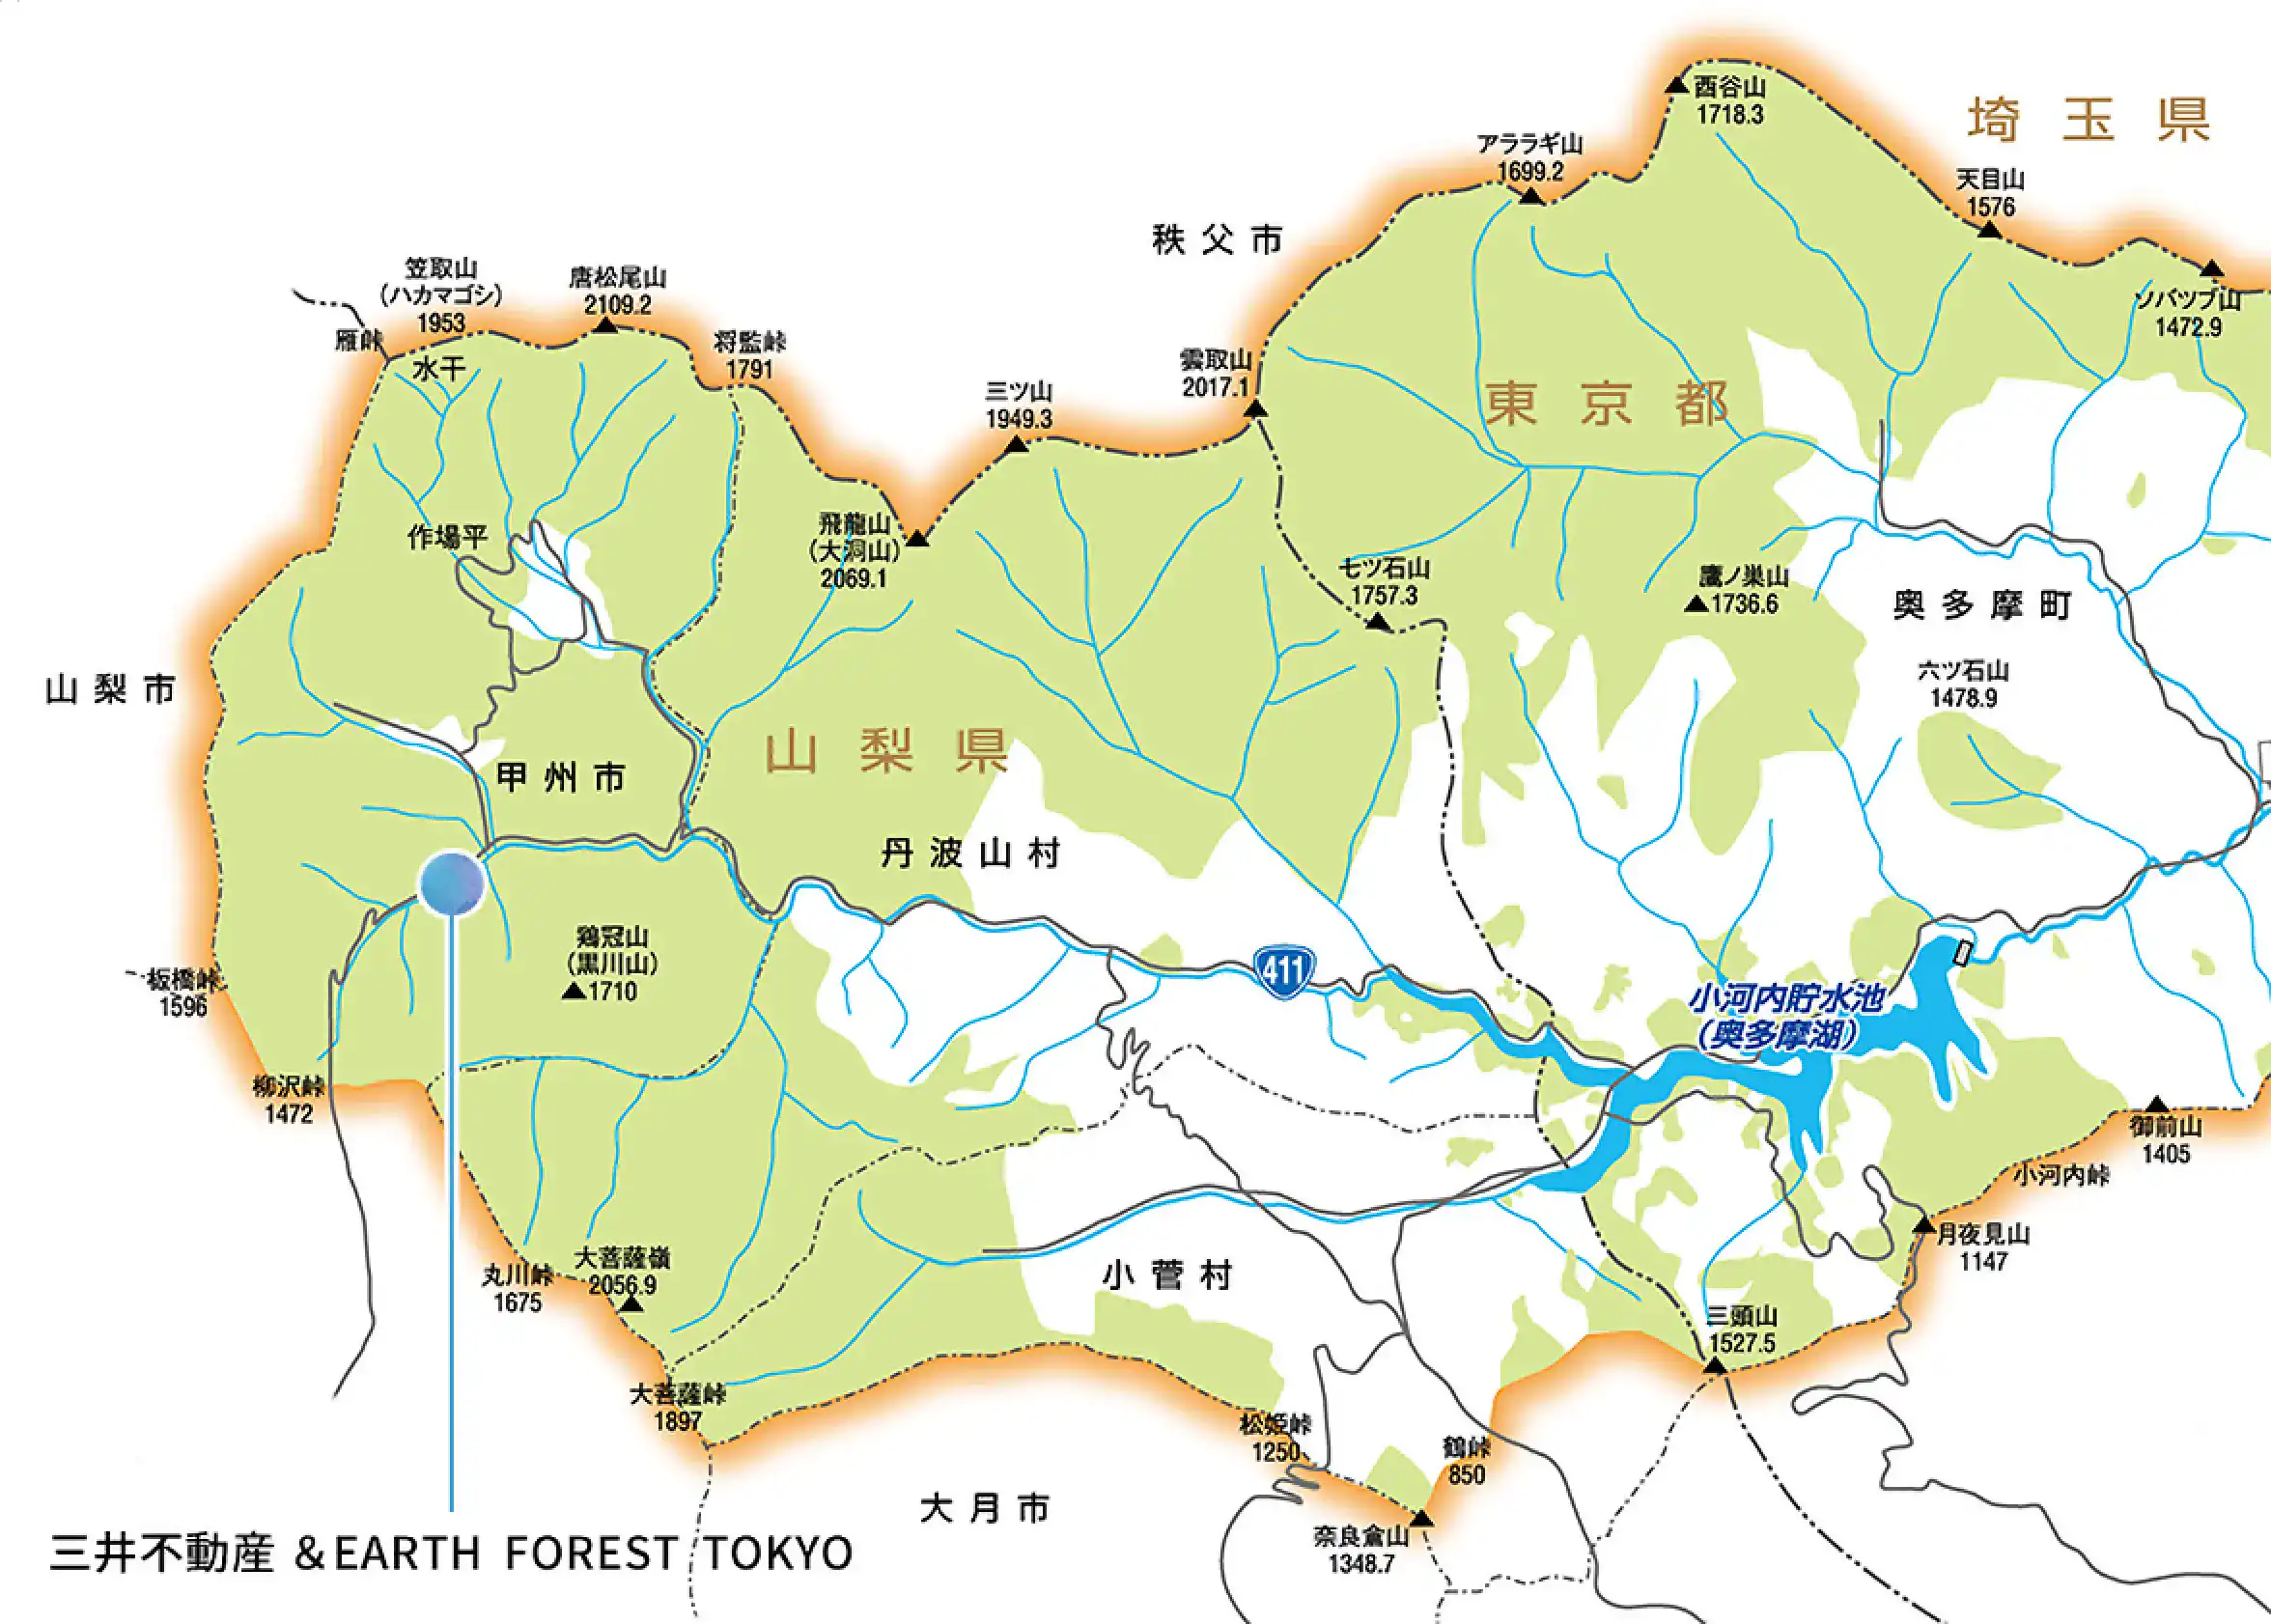 協定エリア 三井不動産& EARTH FOREST TOKYO